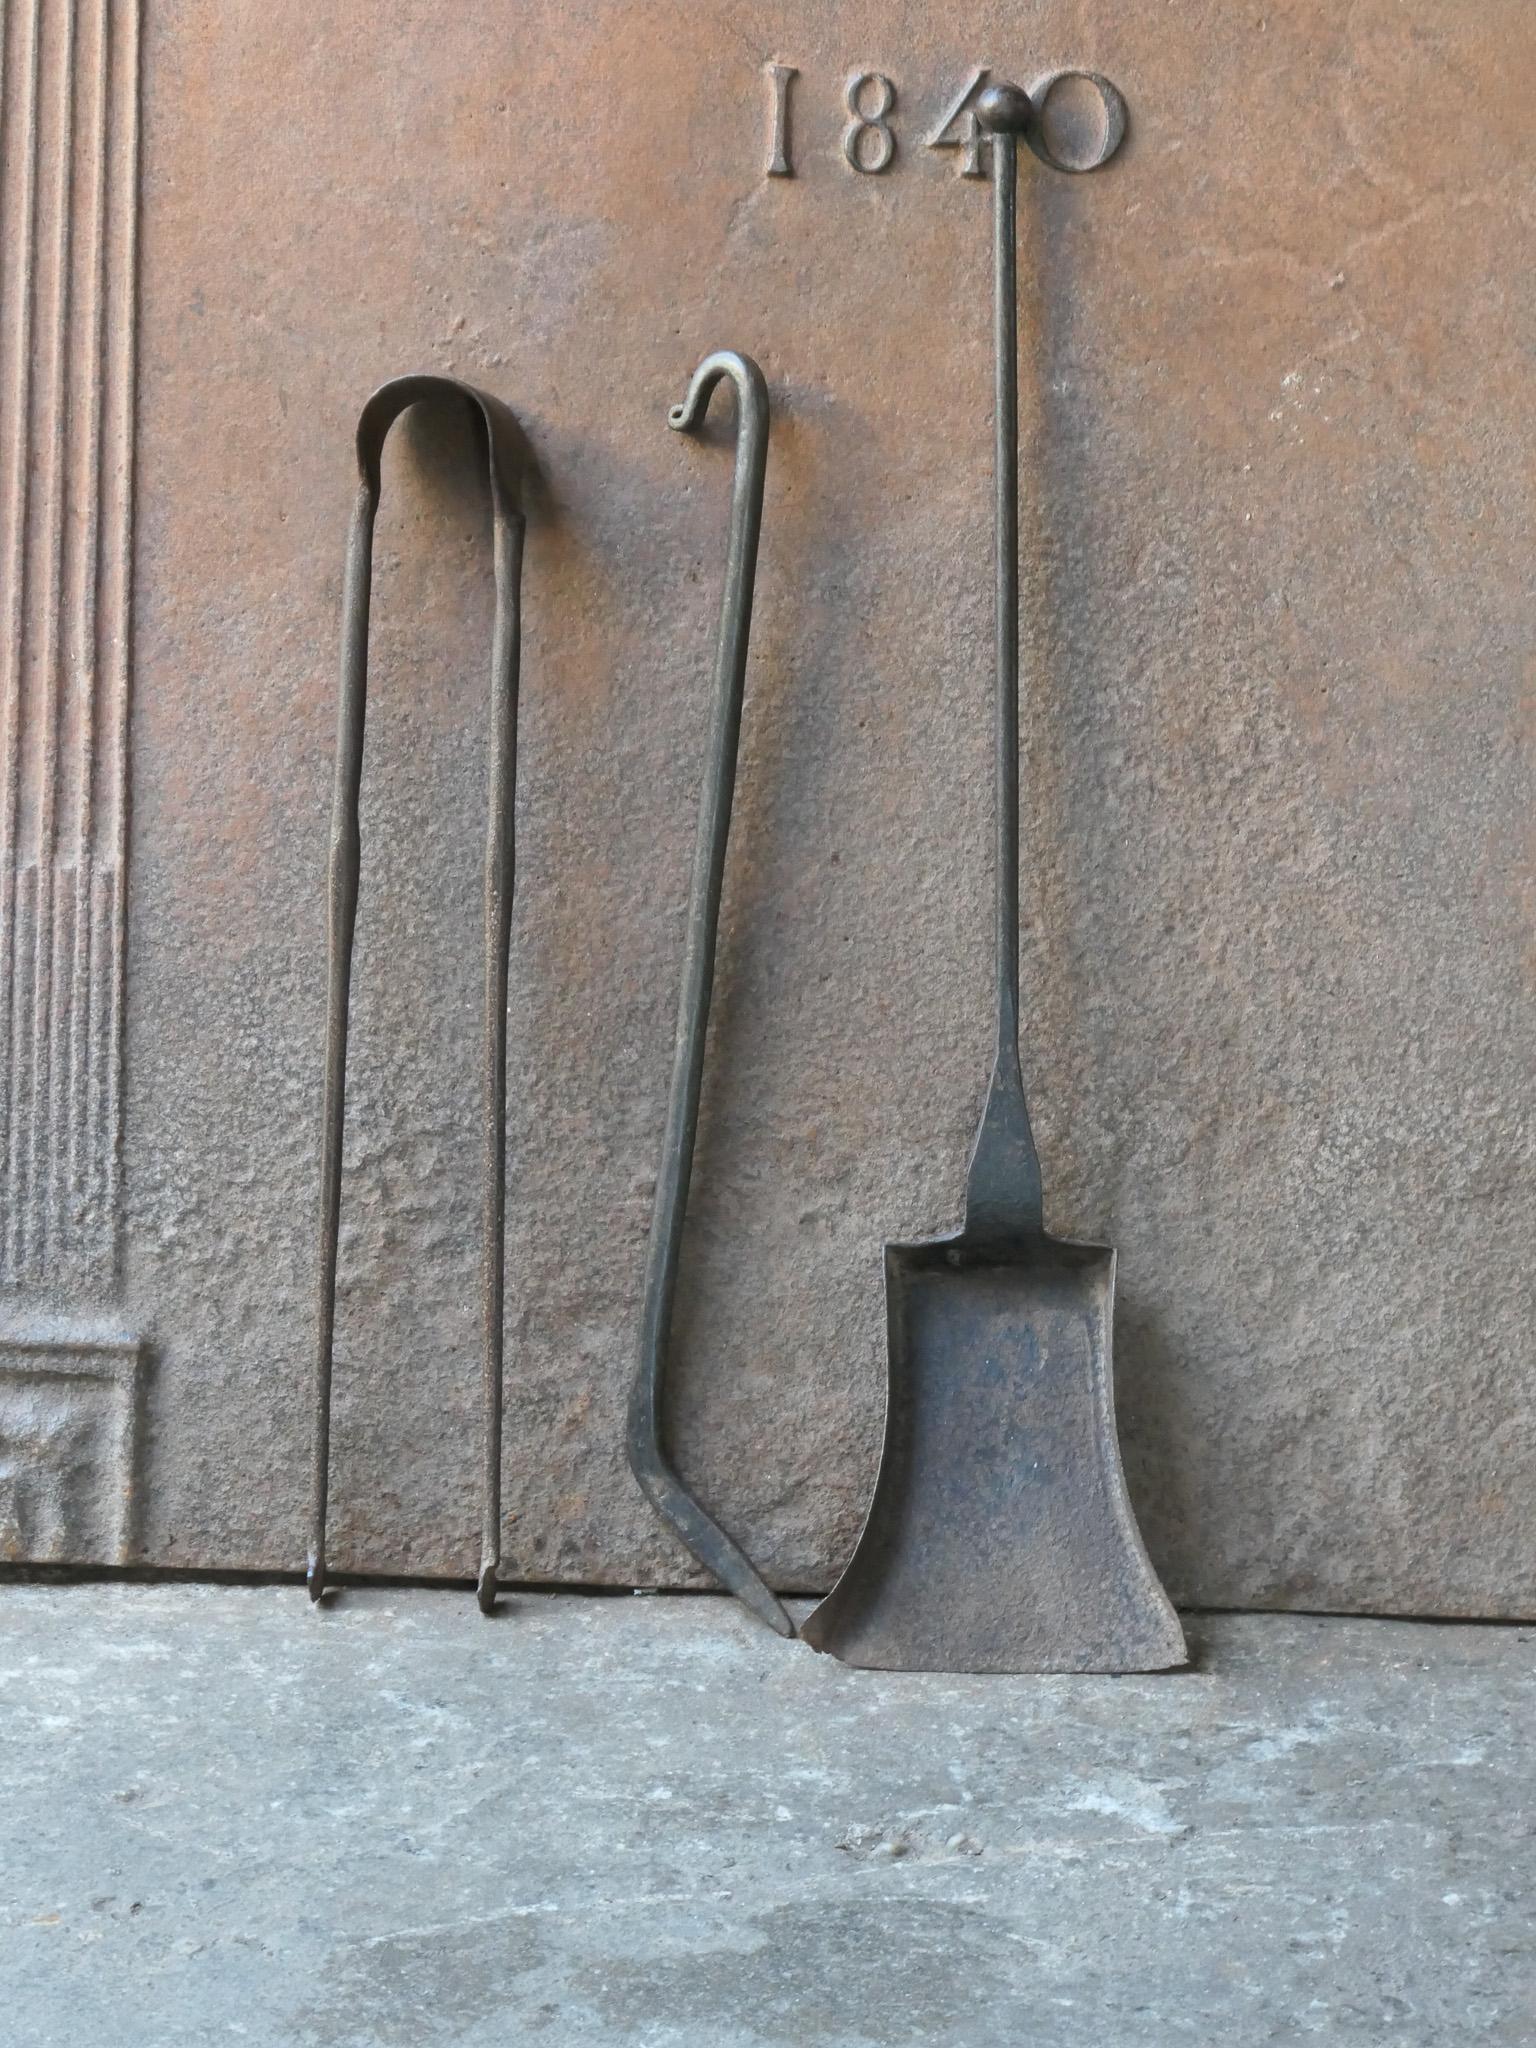 Ensemble d'outils de cheminée rustique français du 18e-19e siècle. L'ensemble d'outils comprend une pince à cheminée, une pelle et un tisonnier. Les outils sont en fer forgé. L'ensemble est en bon état et apte à être utilisé dans la cheminée.